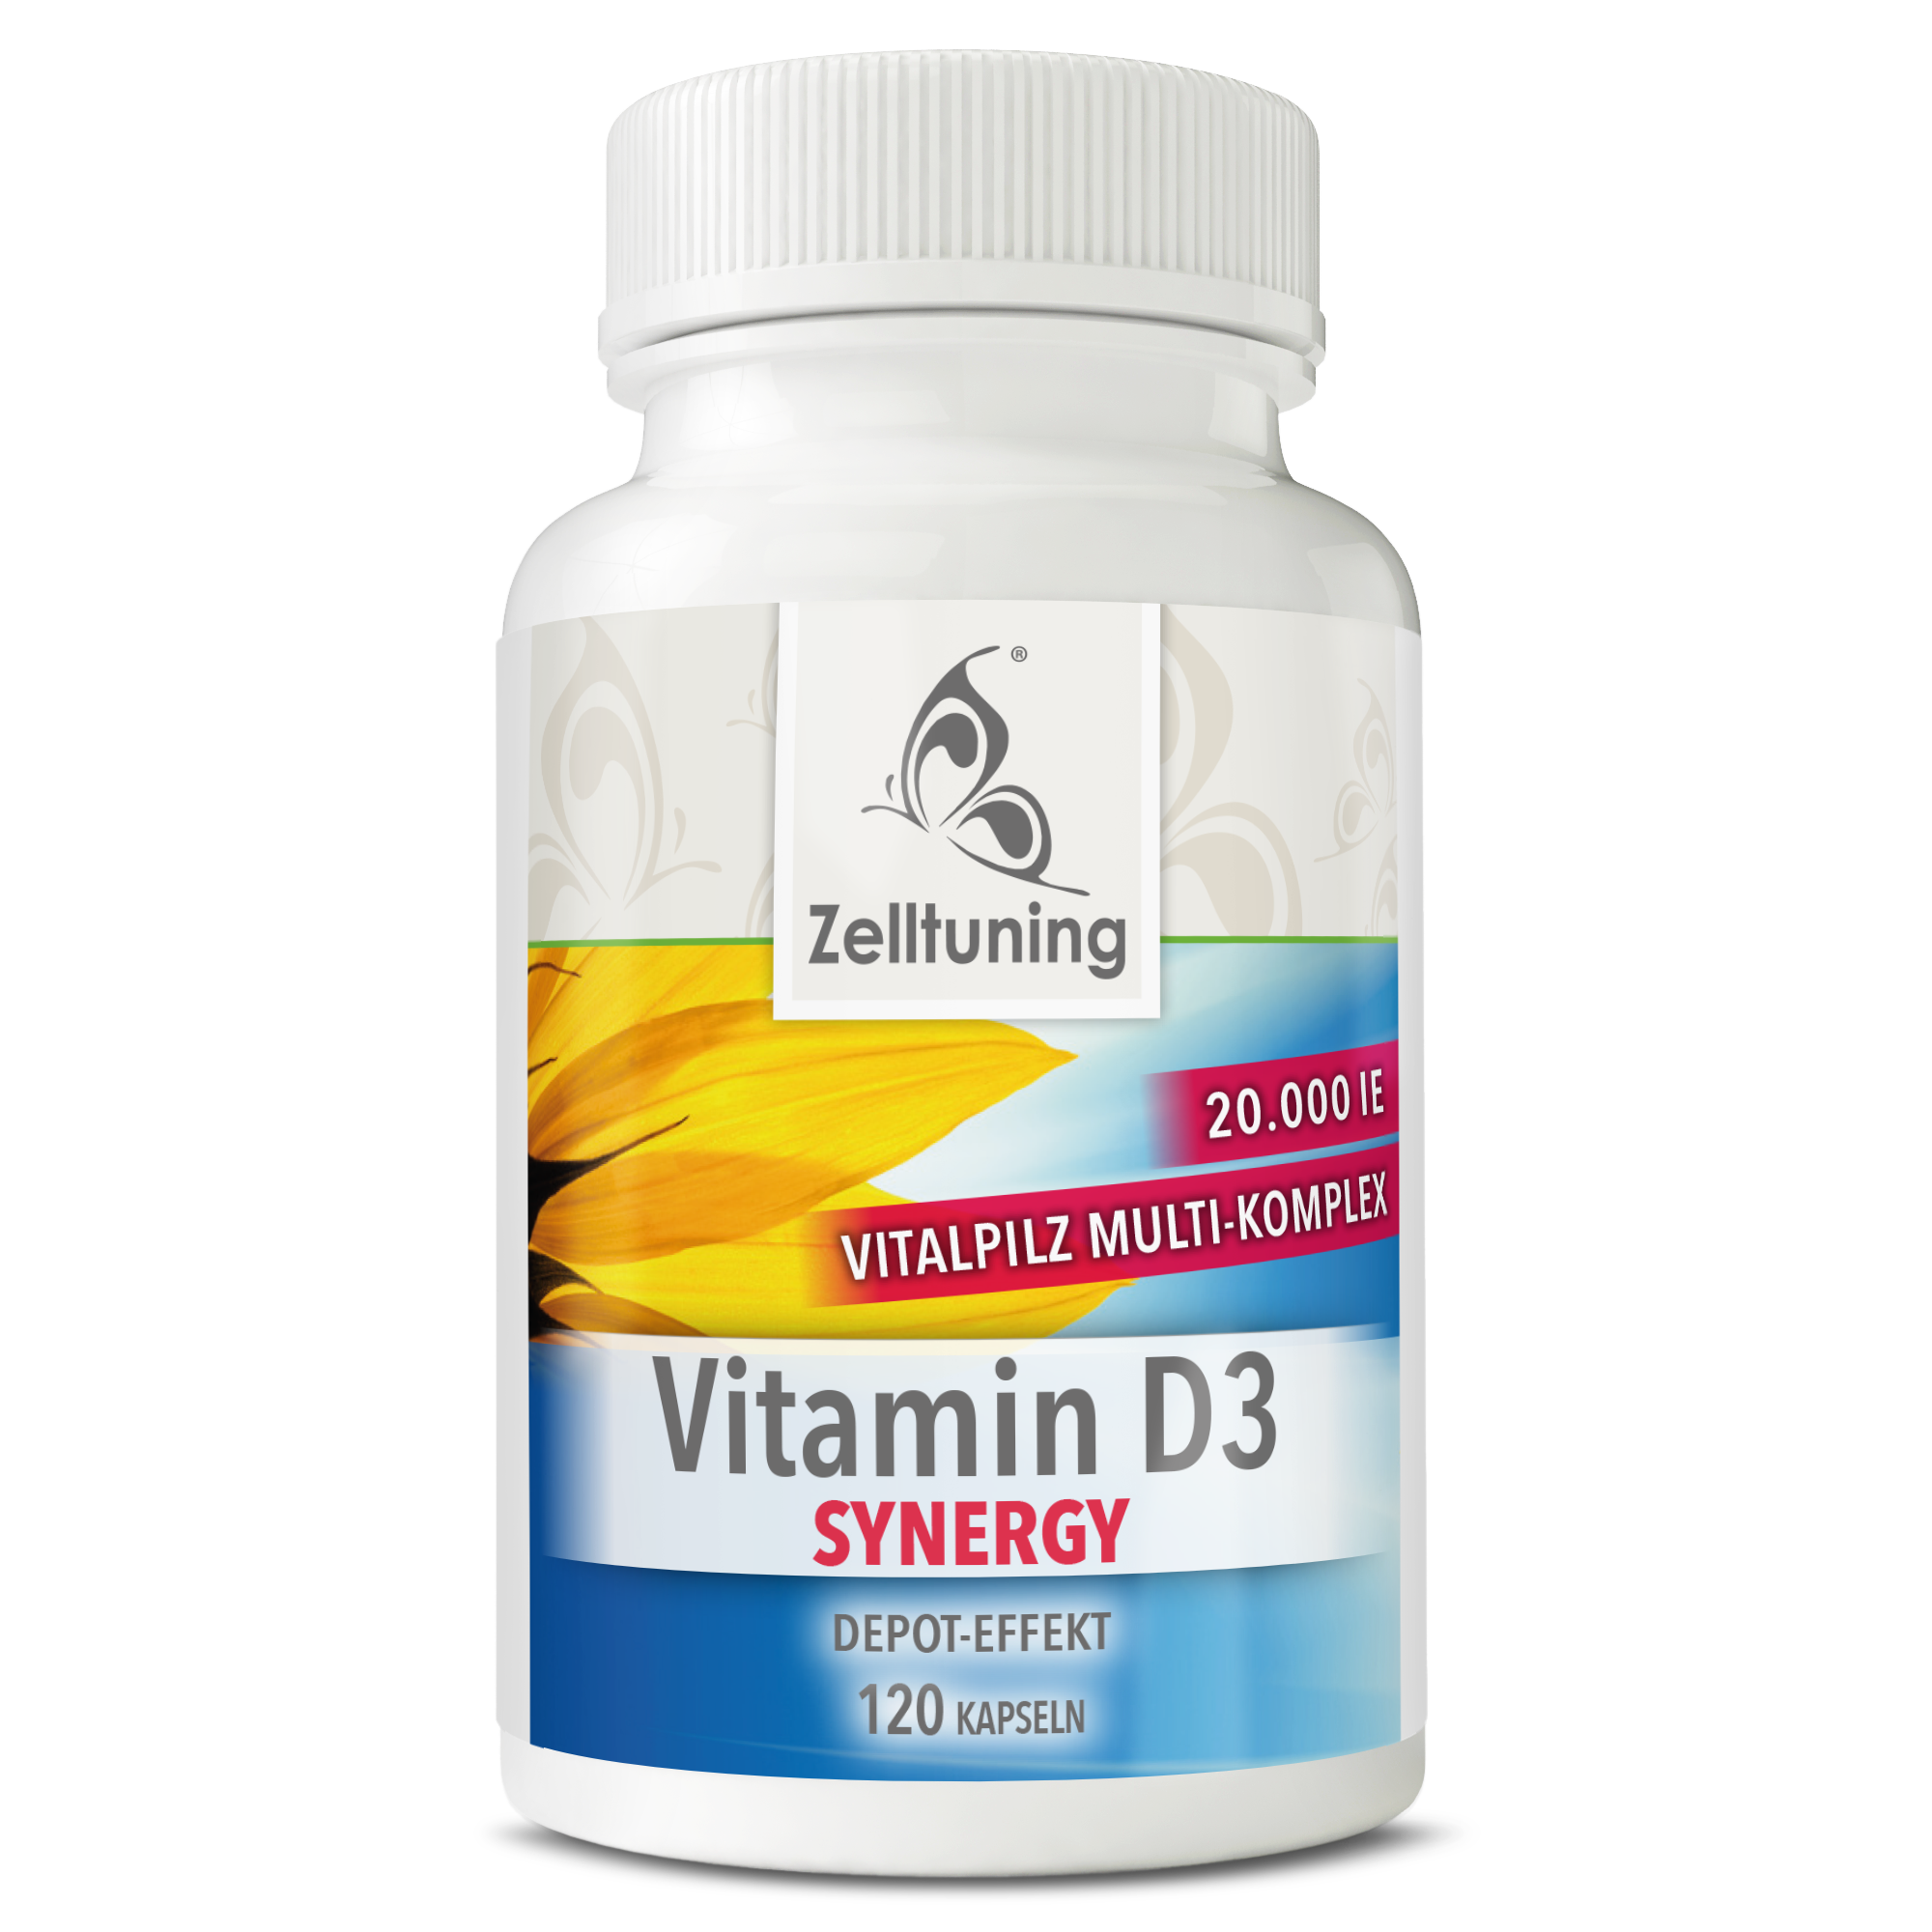 Vitamin D3 Synergy - 20.000IE